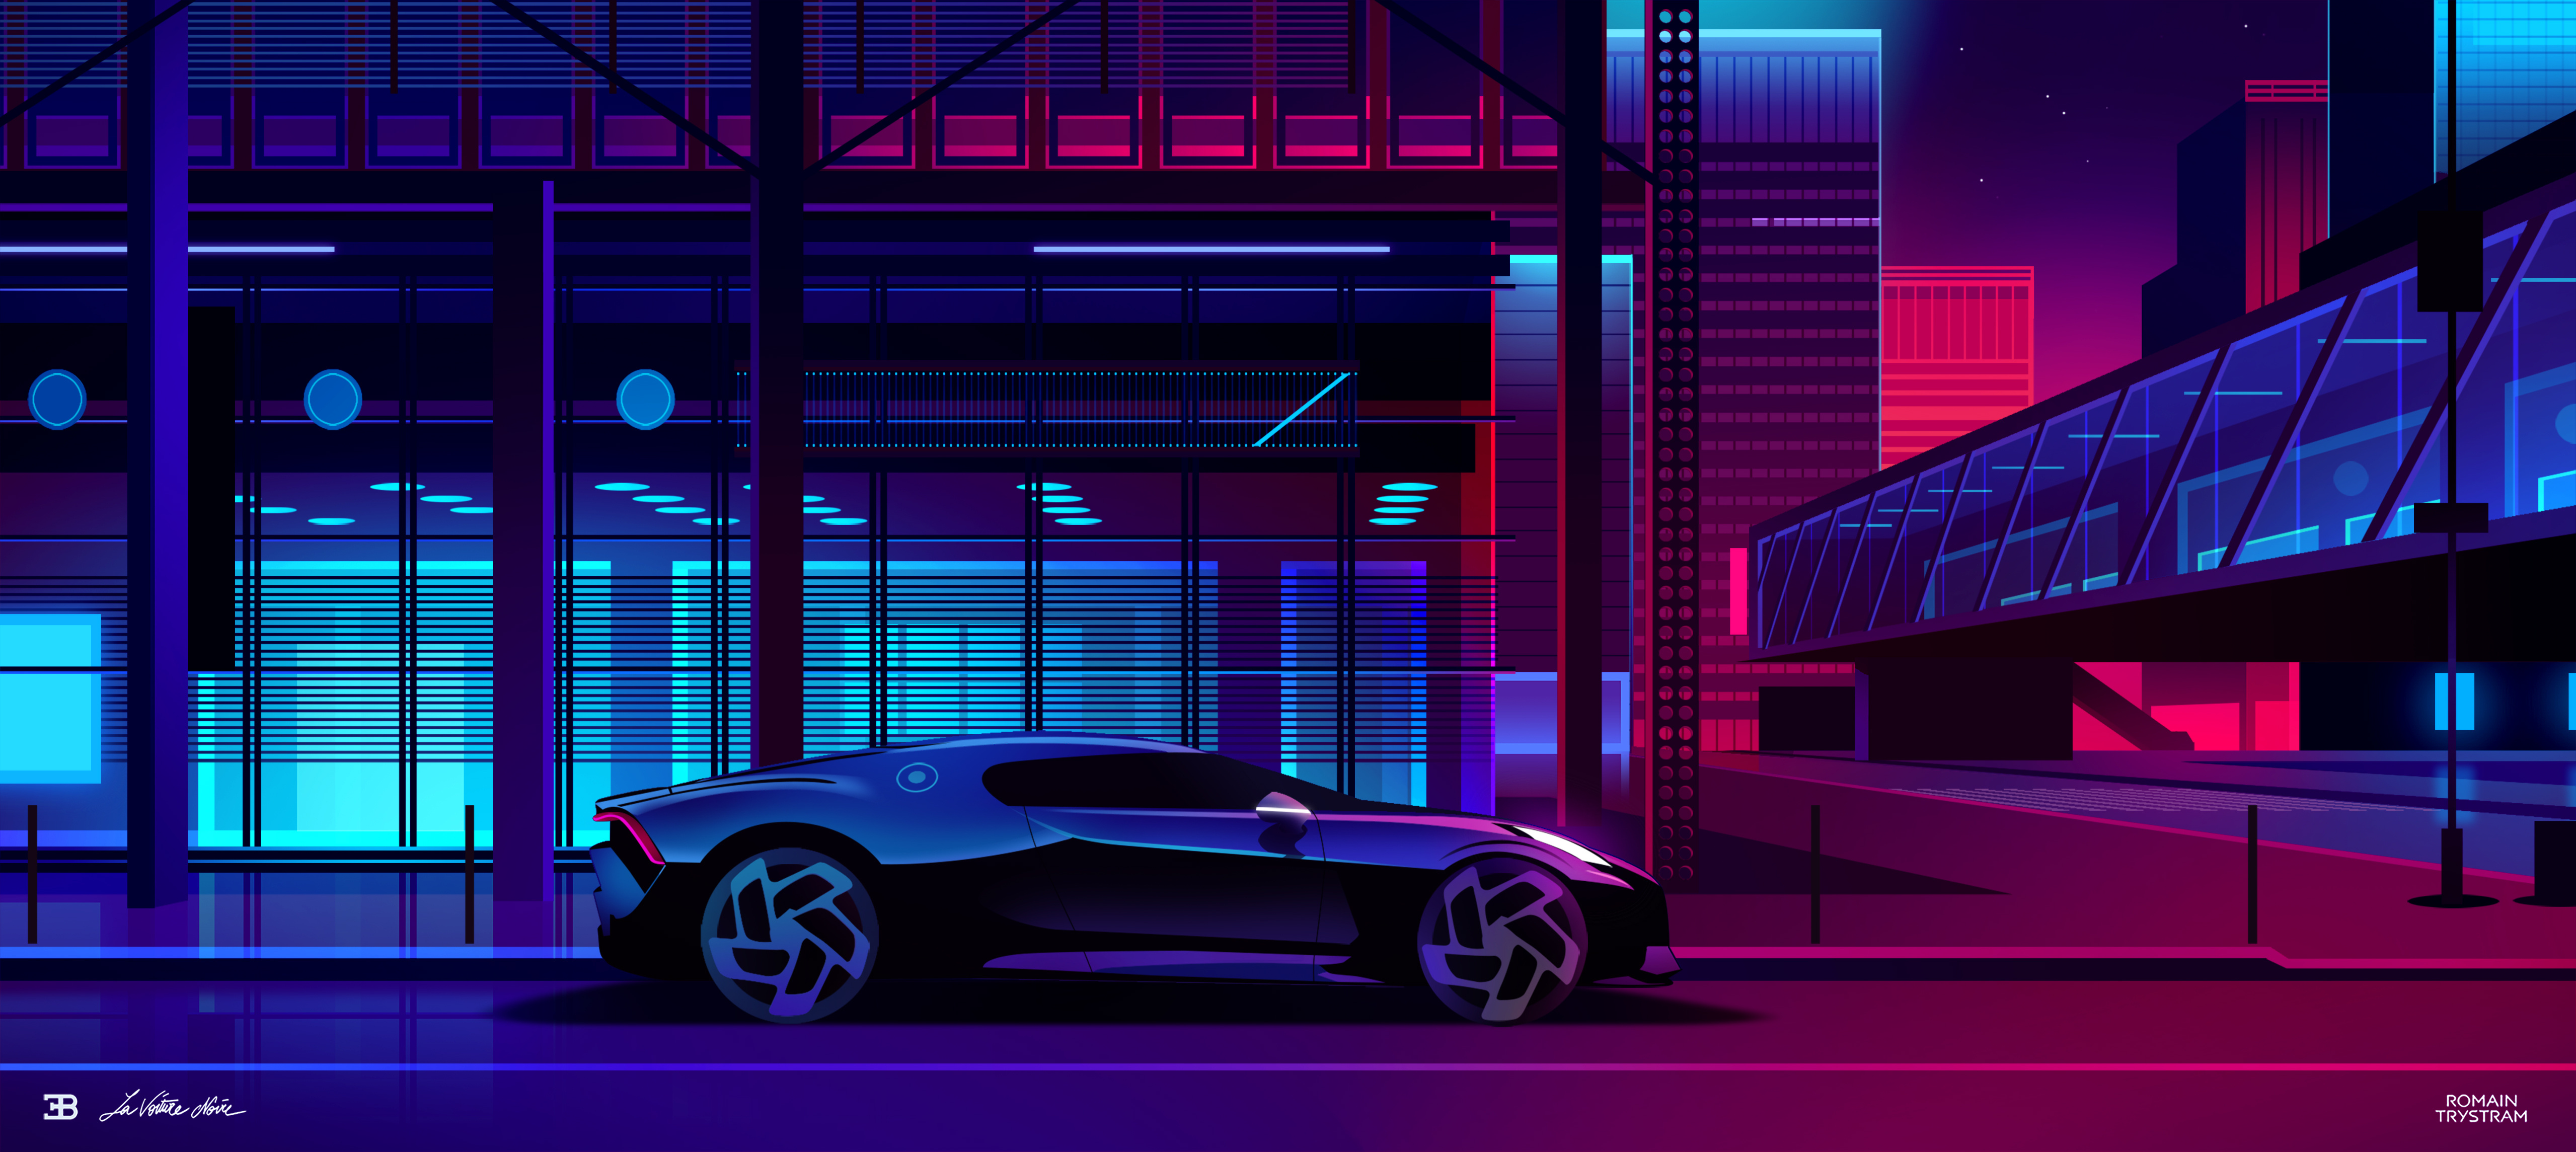 Digital Digital Art Artwork Car Vehicle Bugatti La Voiture Noire Lights City City Lights Neon Neon L 5118x2289